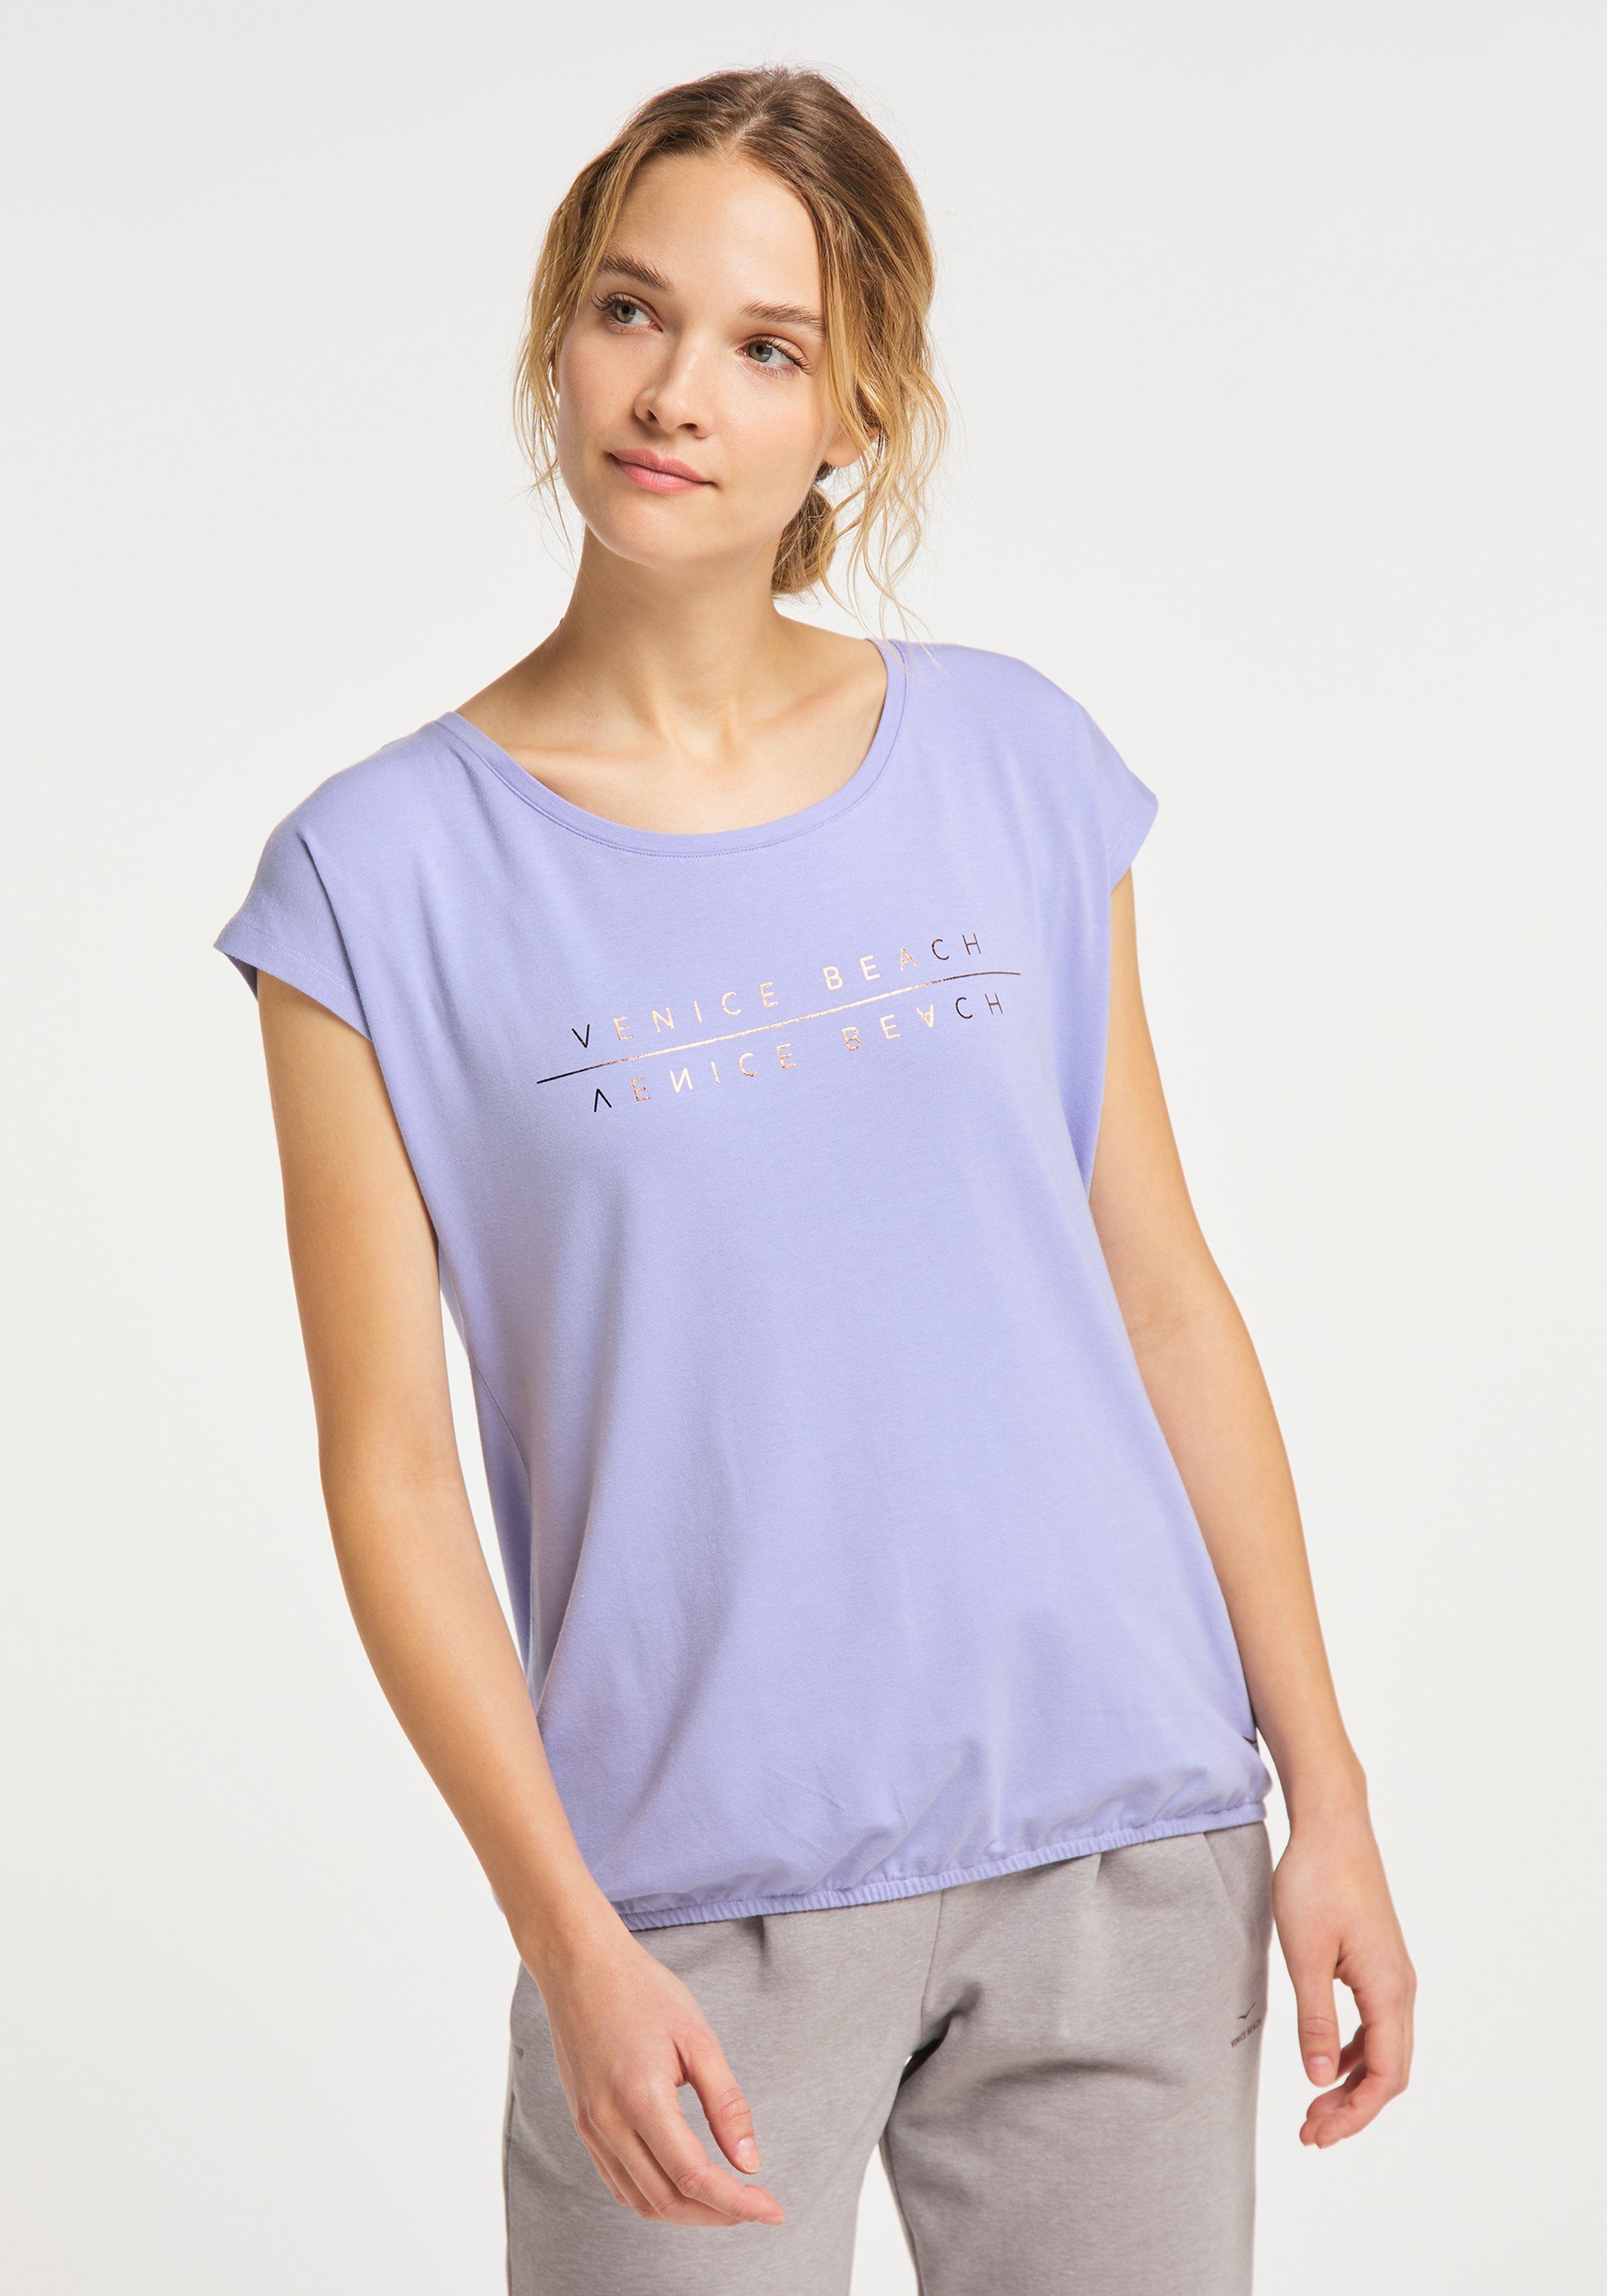 Venice Beach T-Shirt T-Shirt VB lavender sweet (1-tlg) Wonder